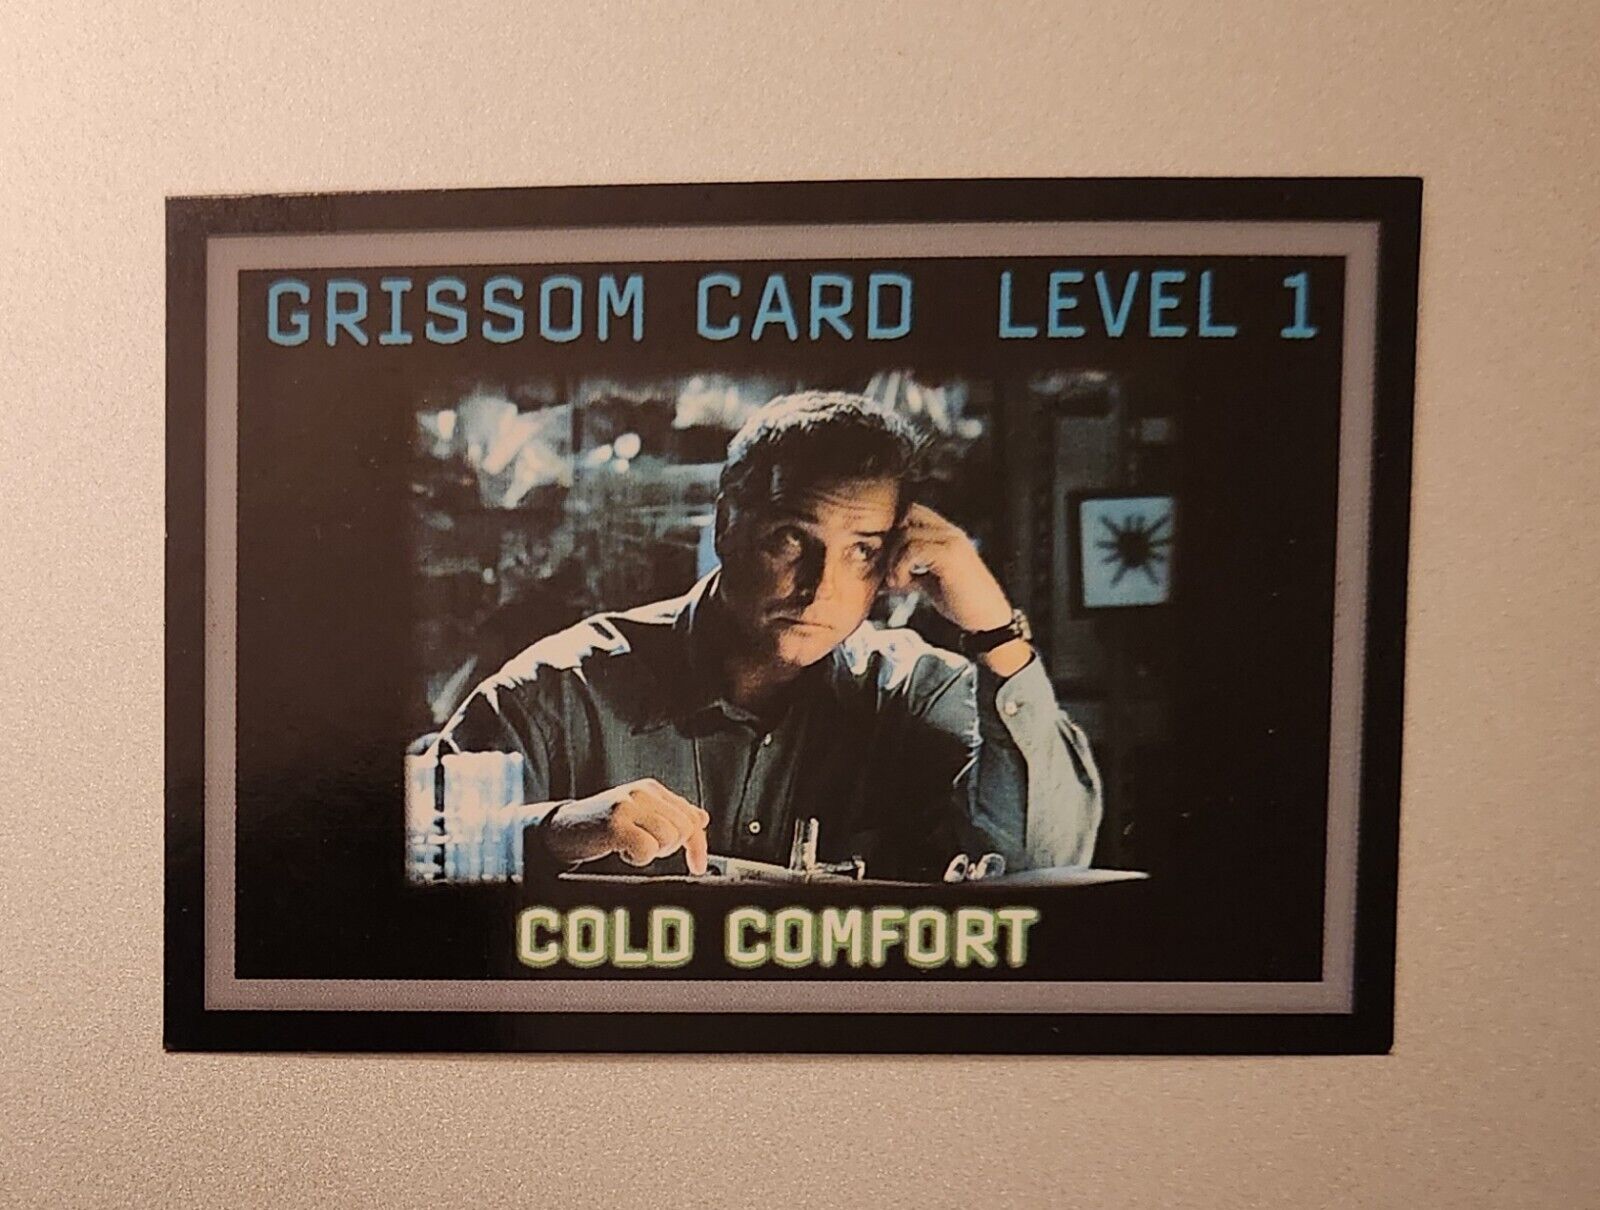  CSI Series Card Level 1